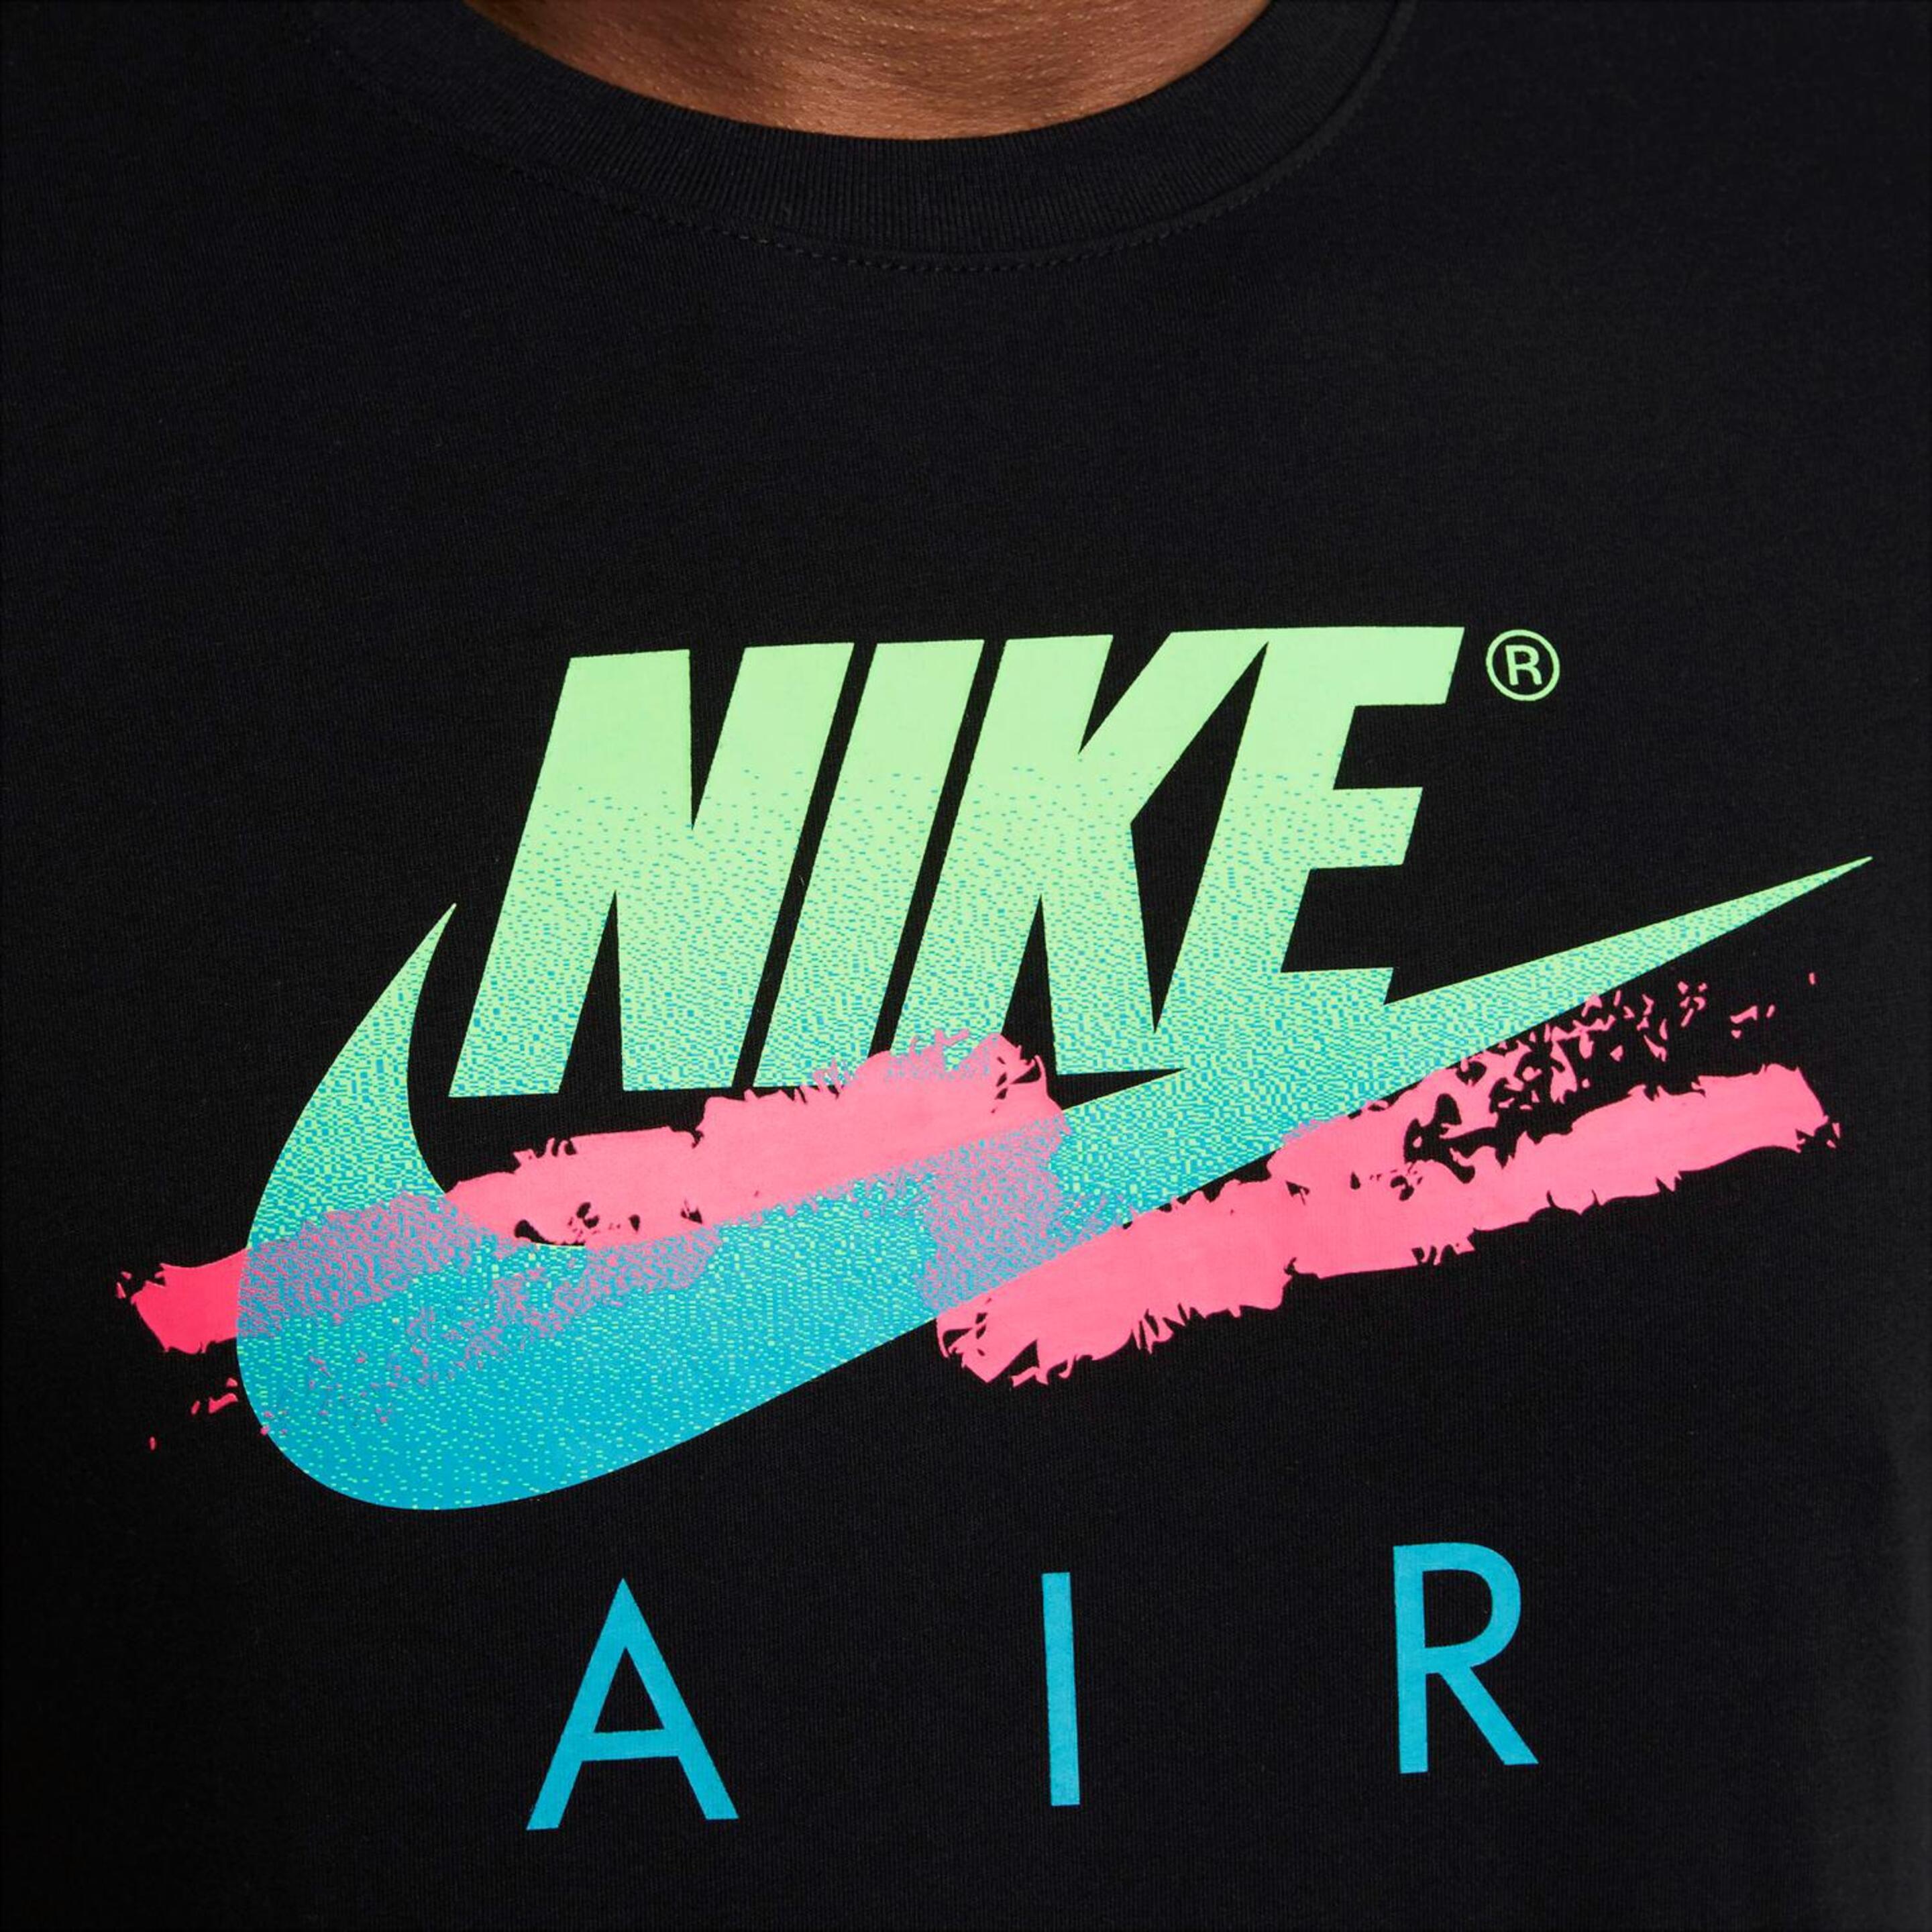 Nike Air Futura